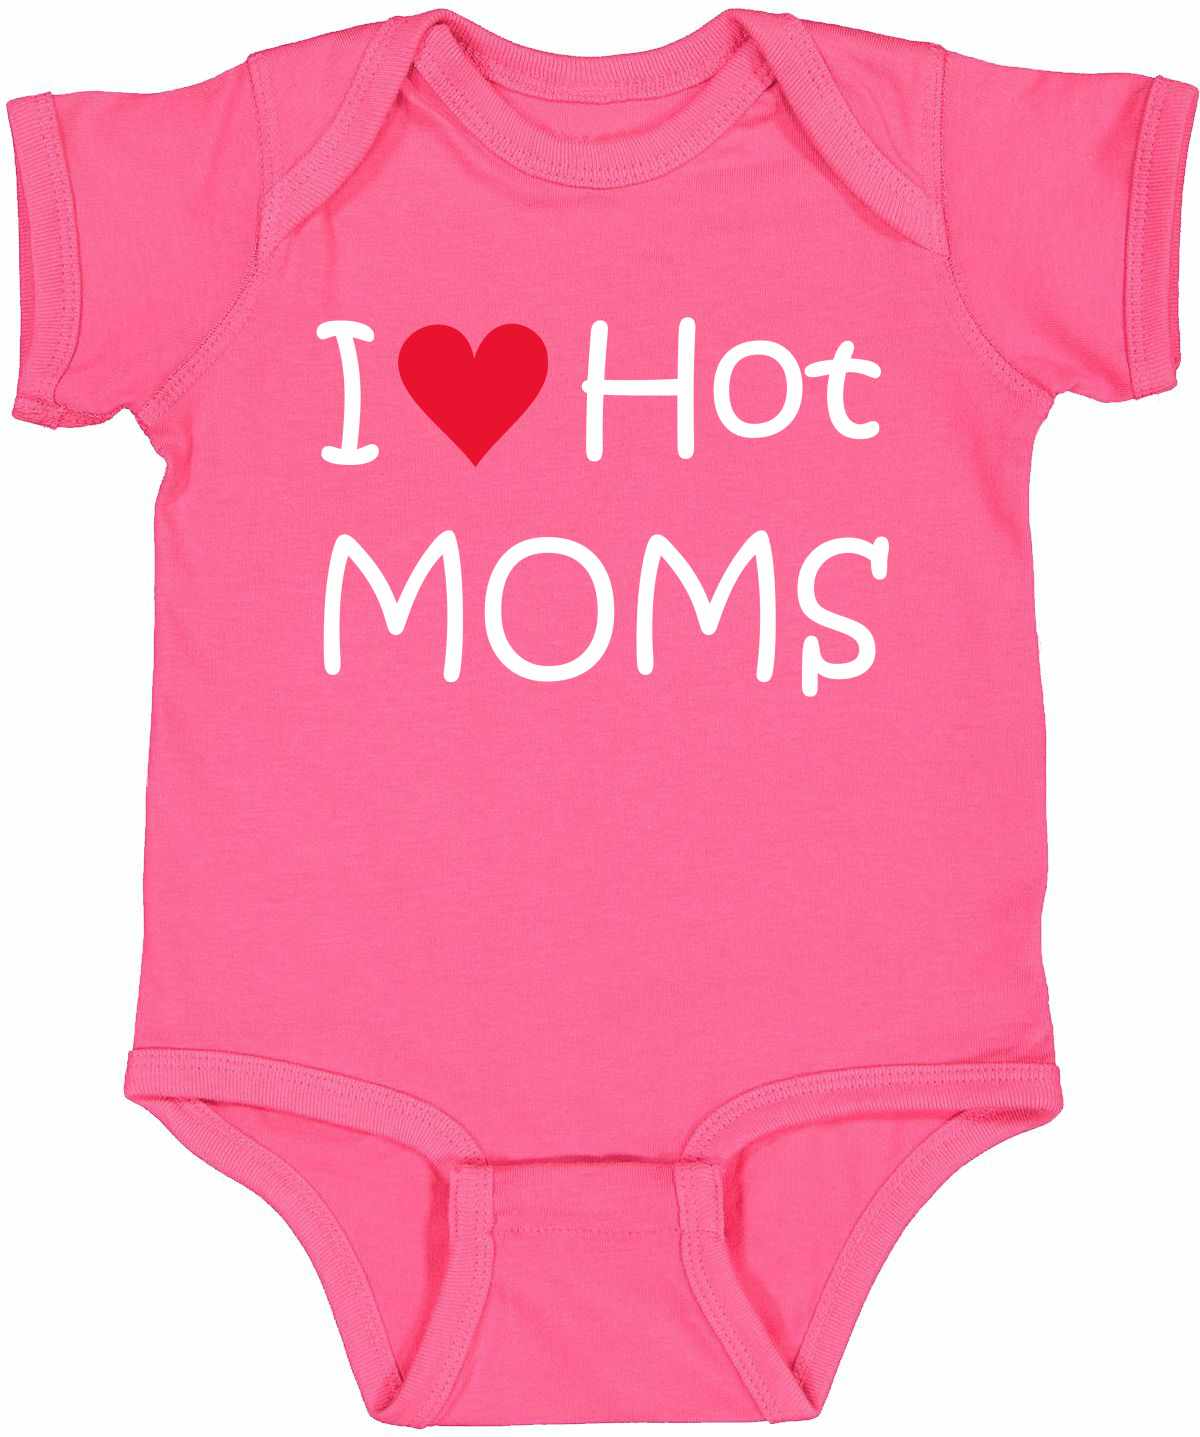 I LOVE HOT MOMS Infant BodySuit (#577-10)